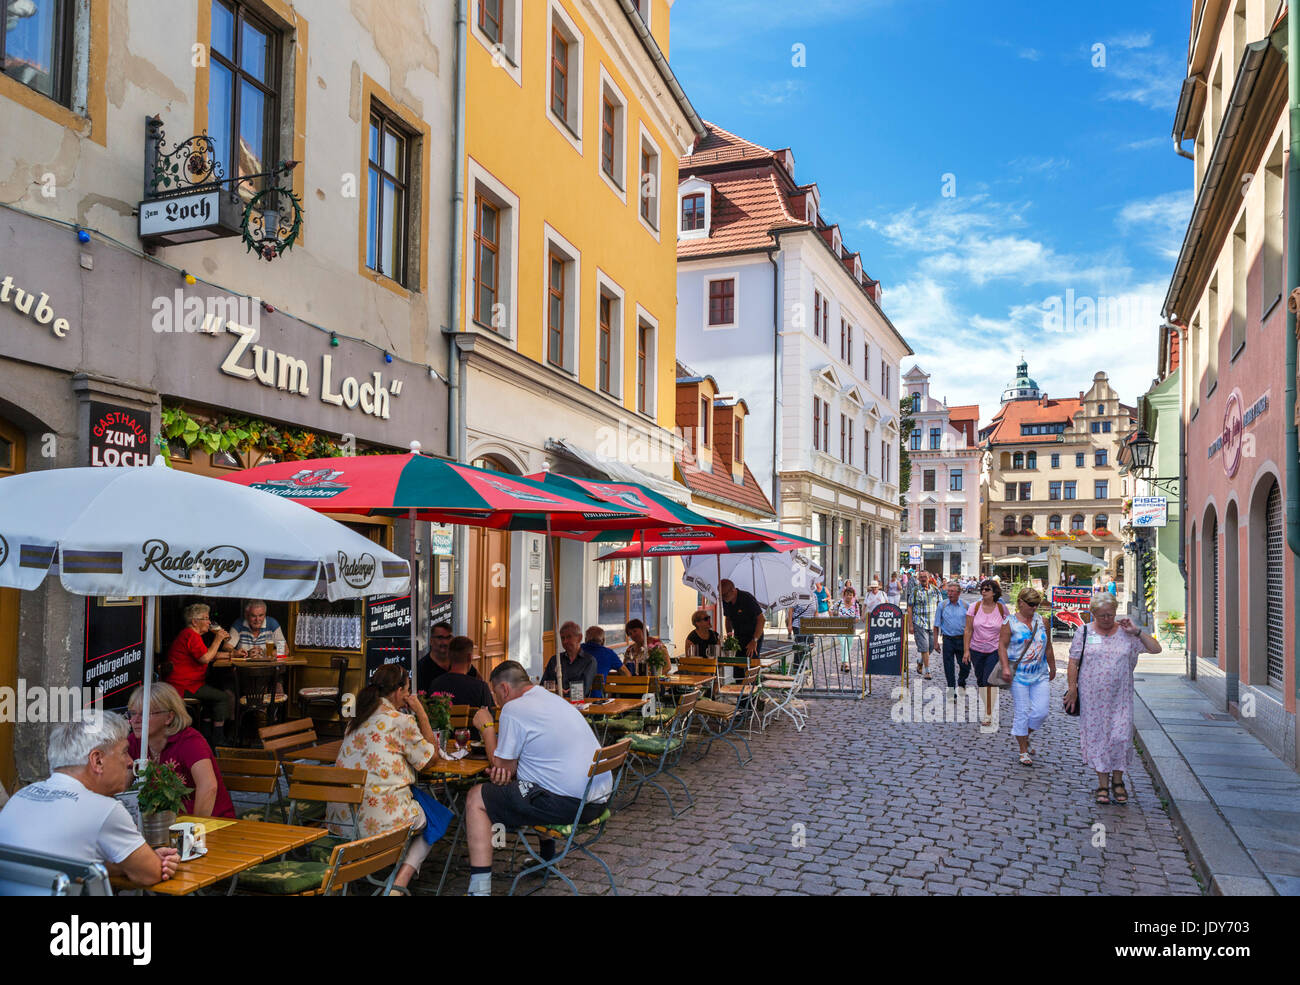 Cafe am Elbstrasse in der alten Stadt, Meißen, Sachsen, Deutschland Stockfoto